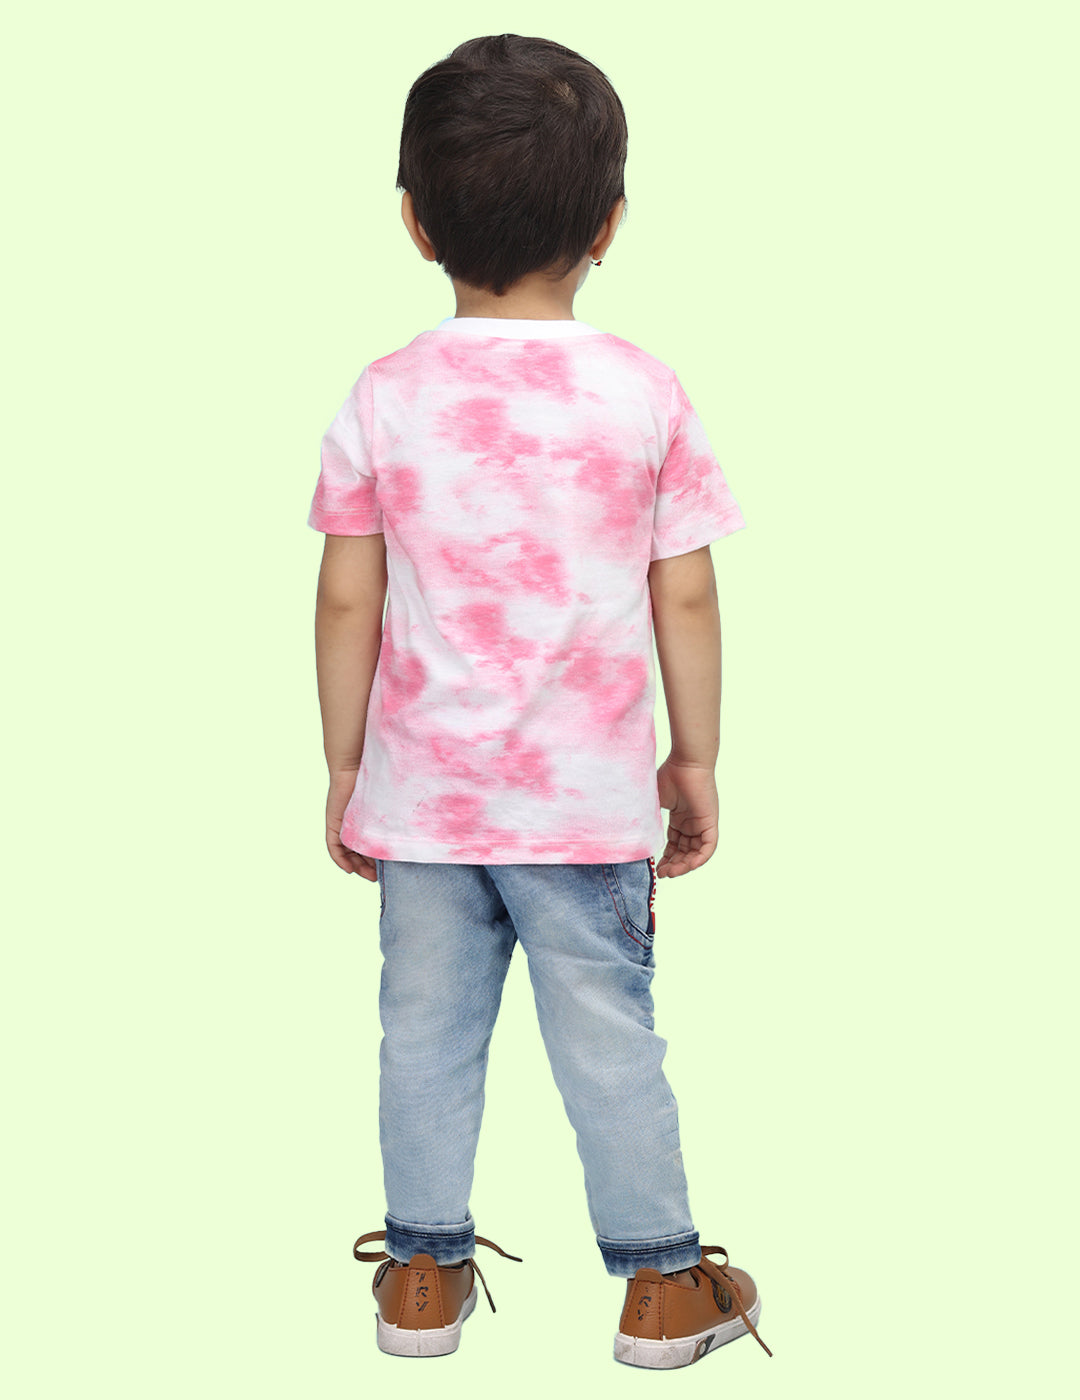 Nusyl infants pink mummy's cutie printed Tie & Dye tshirt.